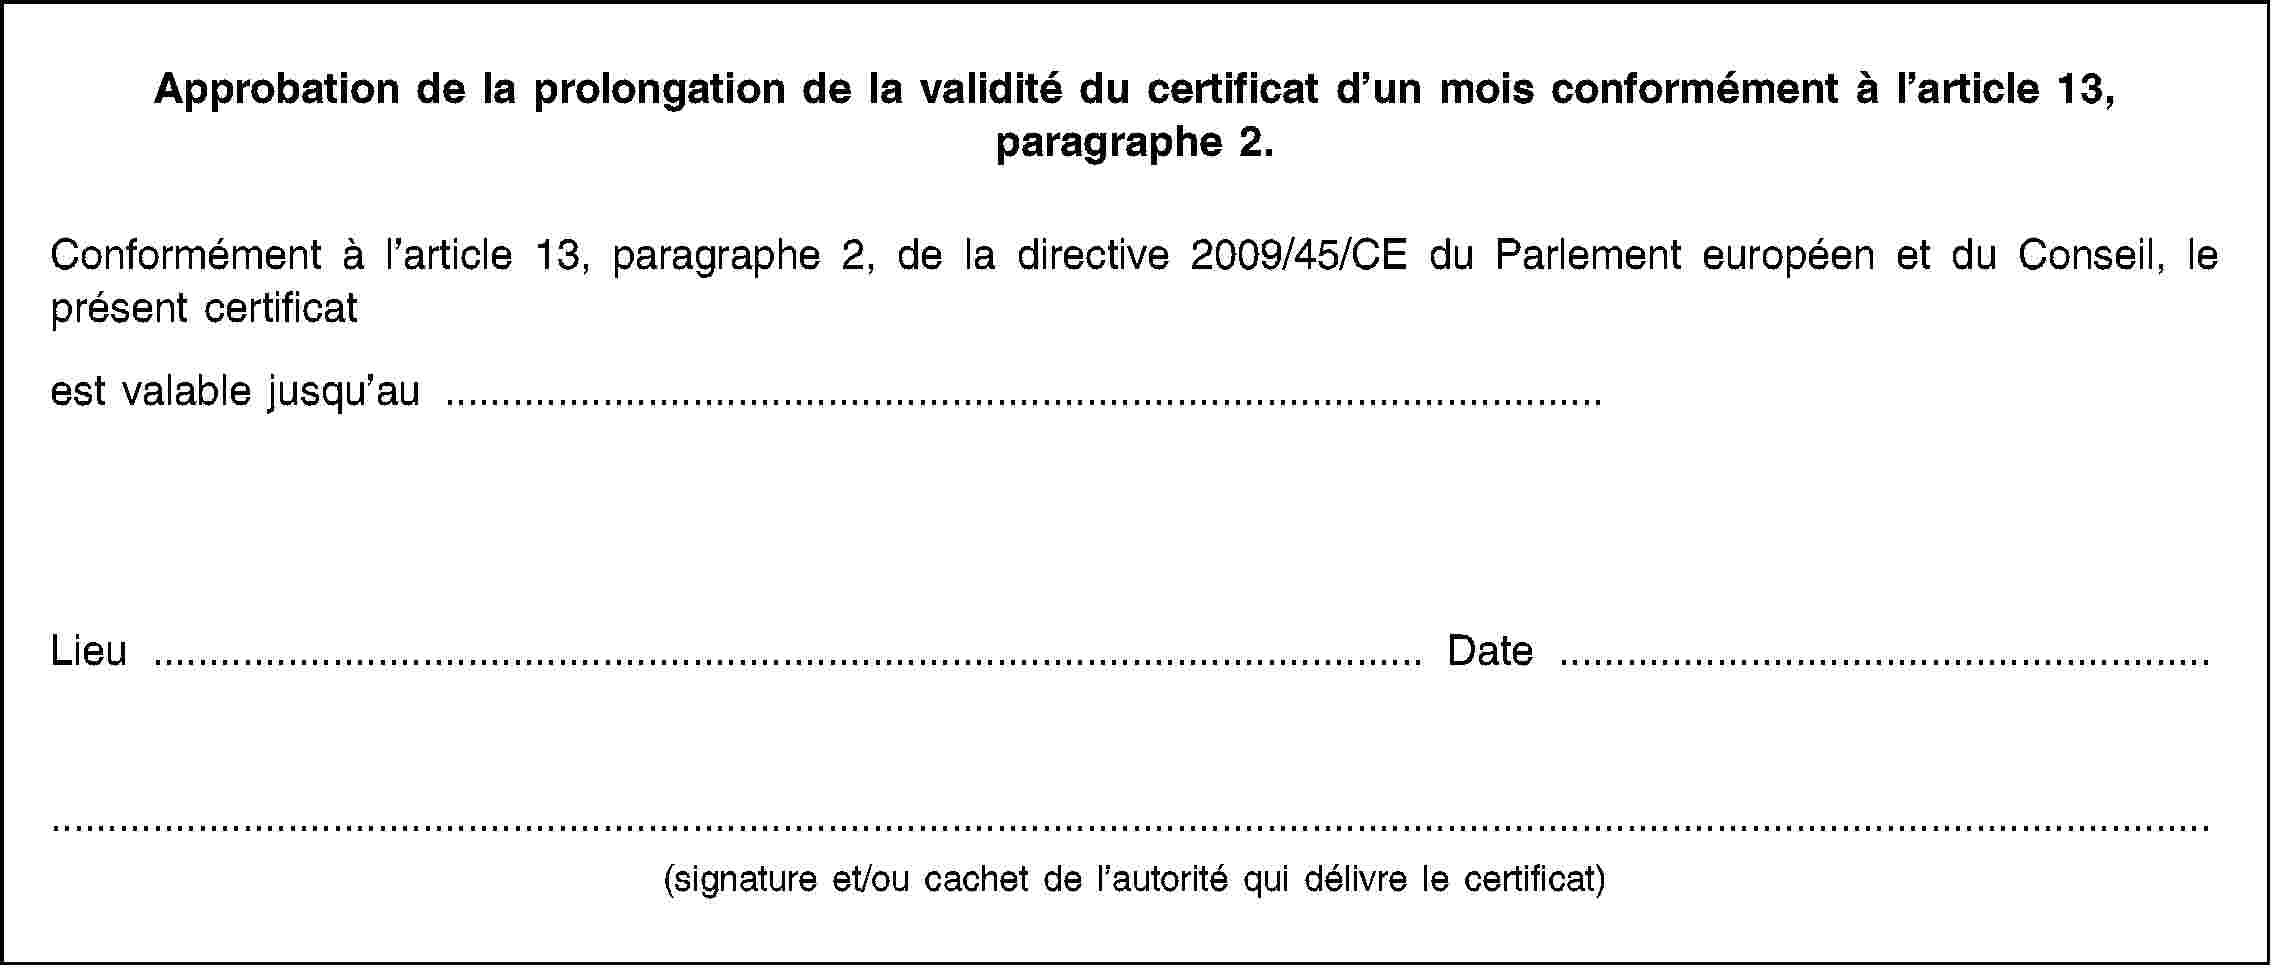 Approbation de la prolongation de la validité du certificat d’un mois conformément à l’article 13, paragraphe 2.Conformément à l’article 13, paragraphe 2, de la directive 2009/45/CE du Parlement européen et du Conseil, le présent certificatest valable jusqu’au …Lieu …Date …(signature et/ou cachet de l’autorité qui délivre le certificat)